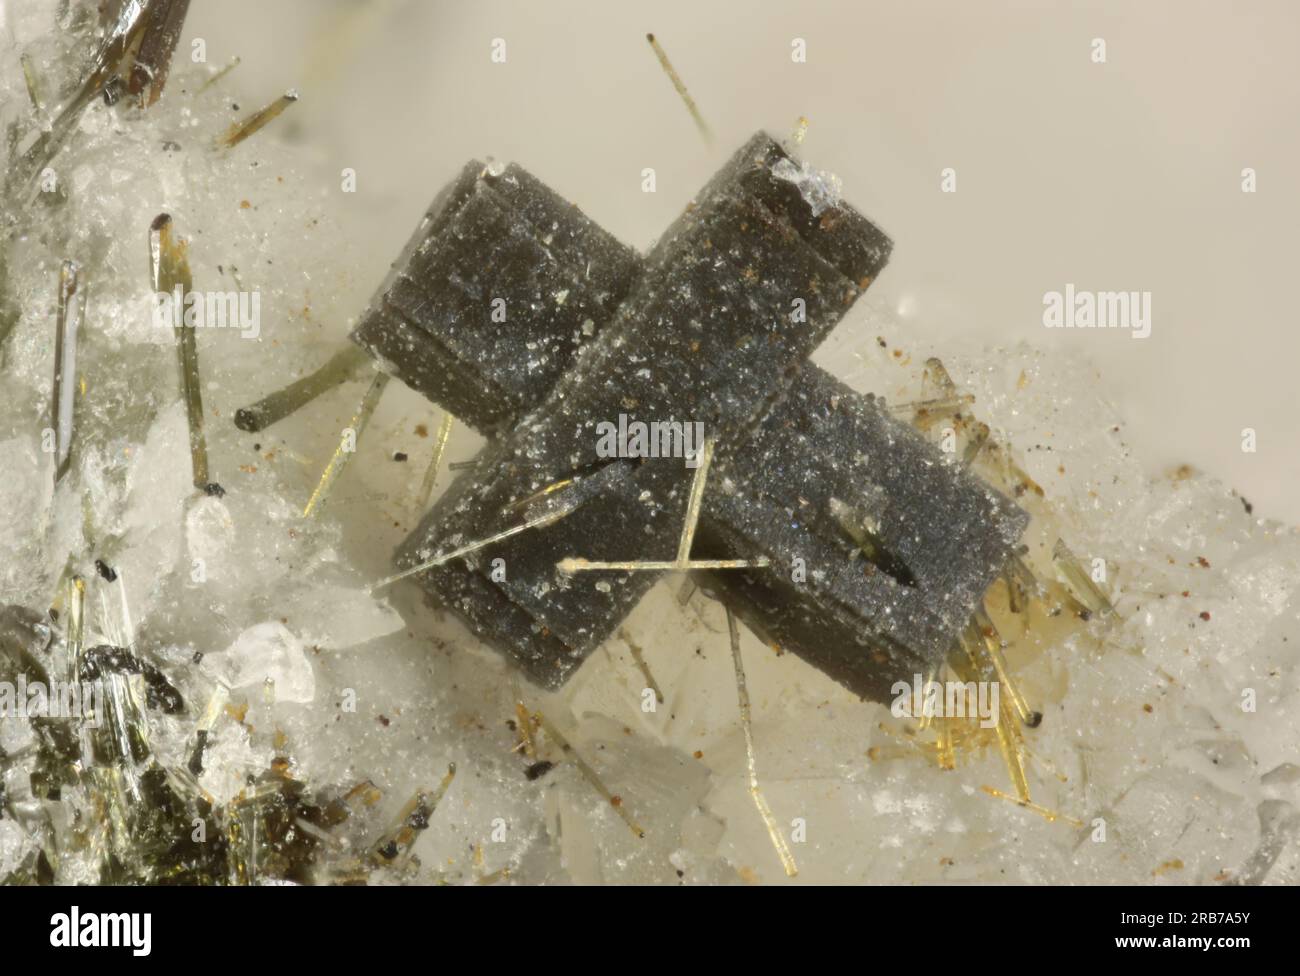 Steacyite - Poudrette quarry, Mont Saint-Hilaire, La Vallée-du-Richelieu RCM, Montérégie, Québec, Canada - 0.95 mm complex Steacyte crystal. Stock Photo